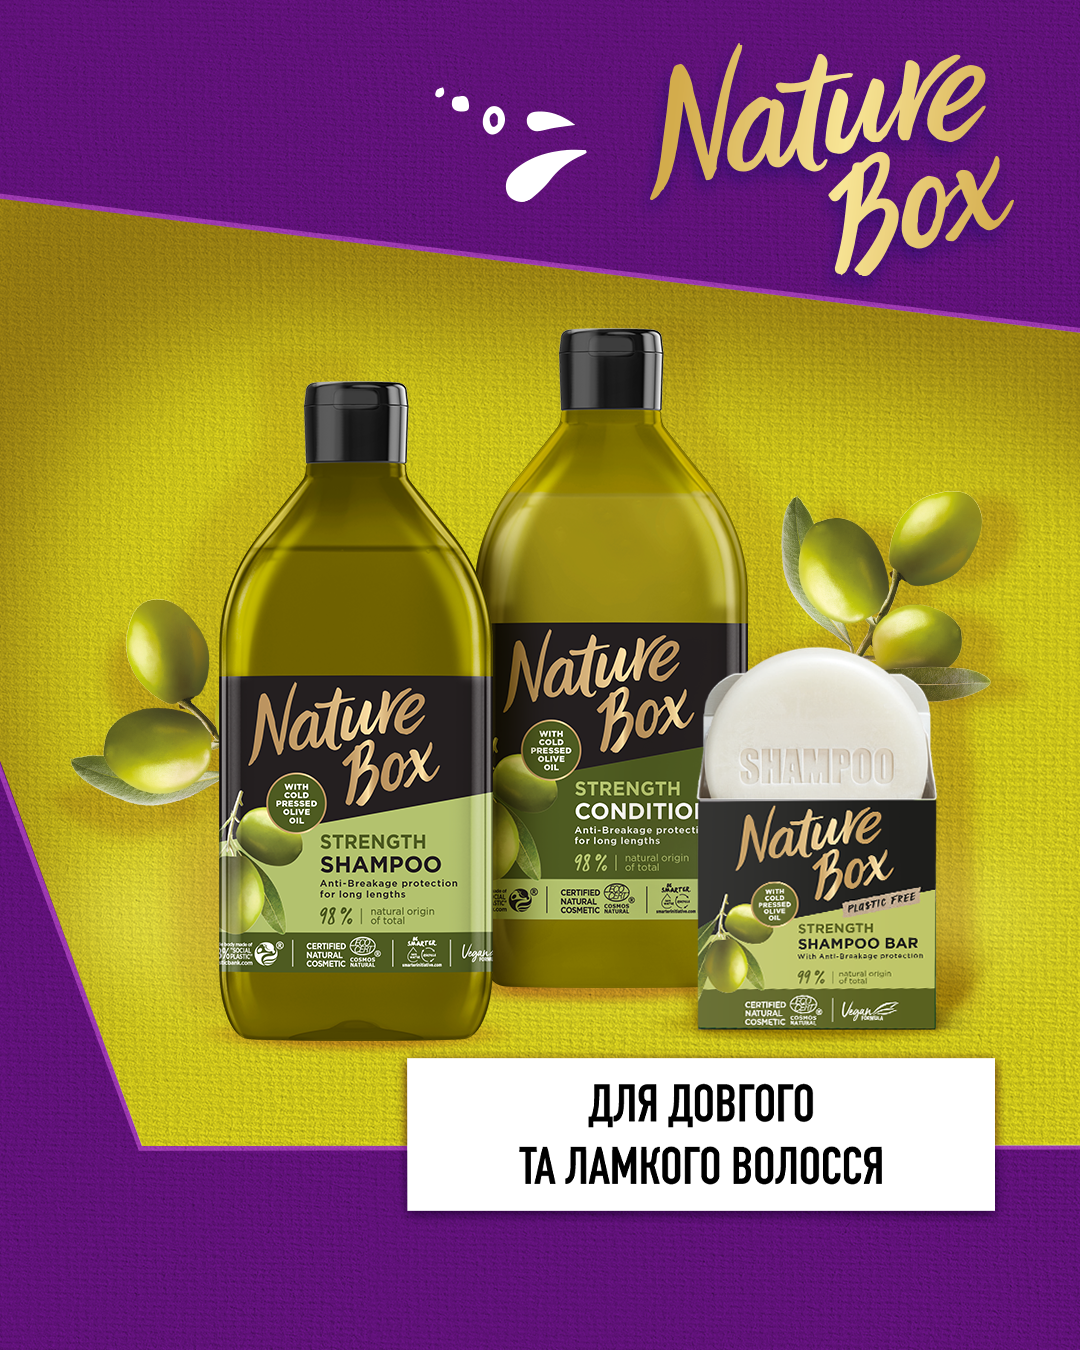 Бальзам Nature Box для укрепления длинных волос и противодействия ломкости, с оливковым маслом холодного отжима, 385 мл - фото 3